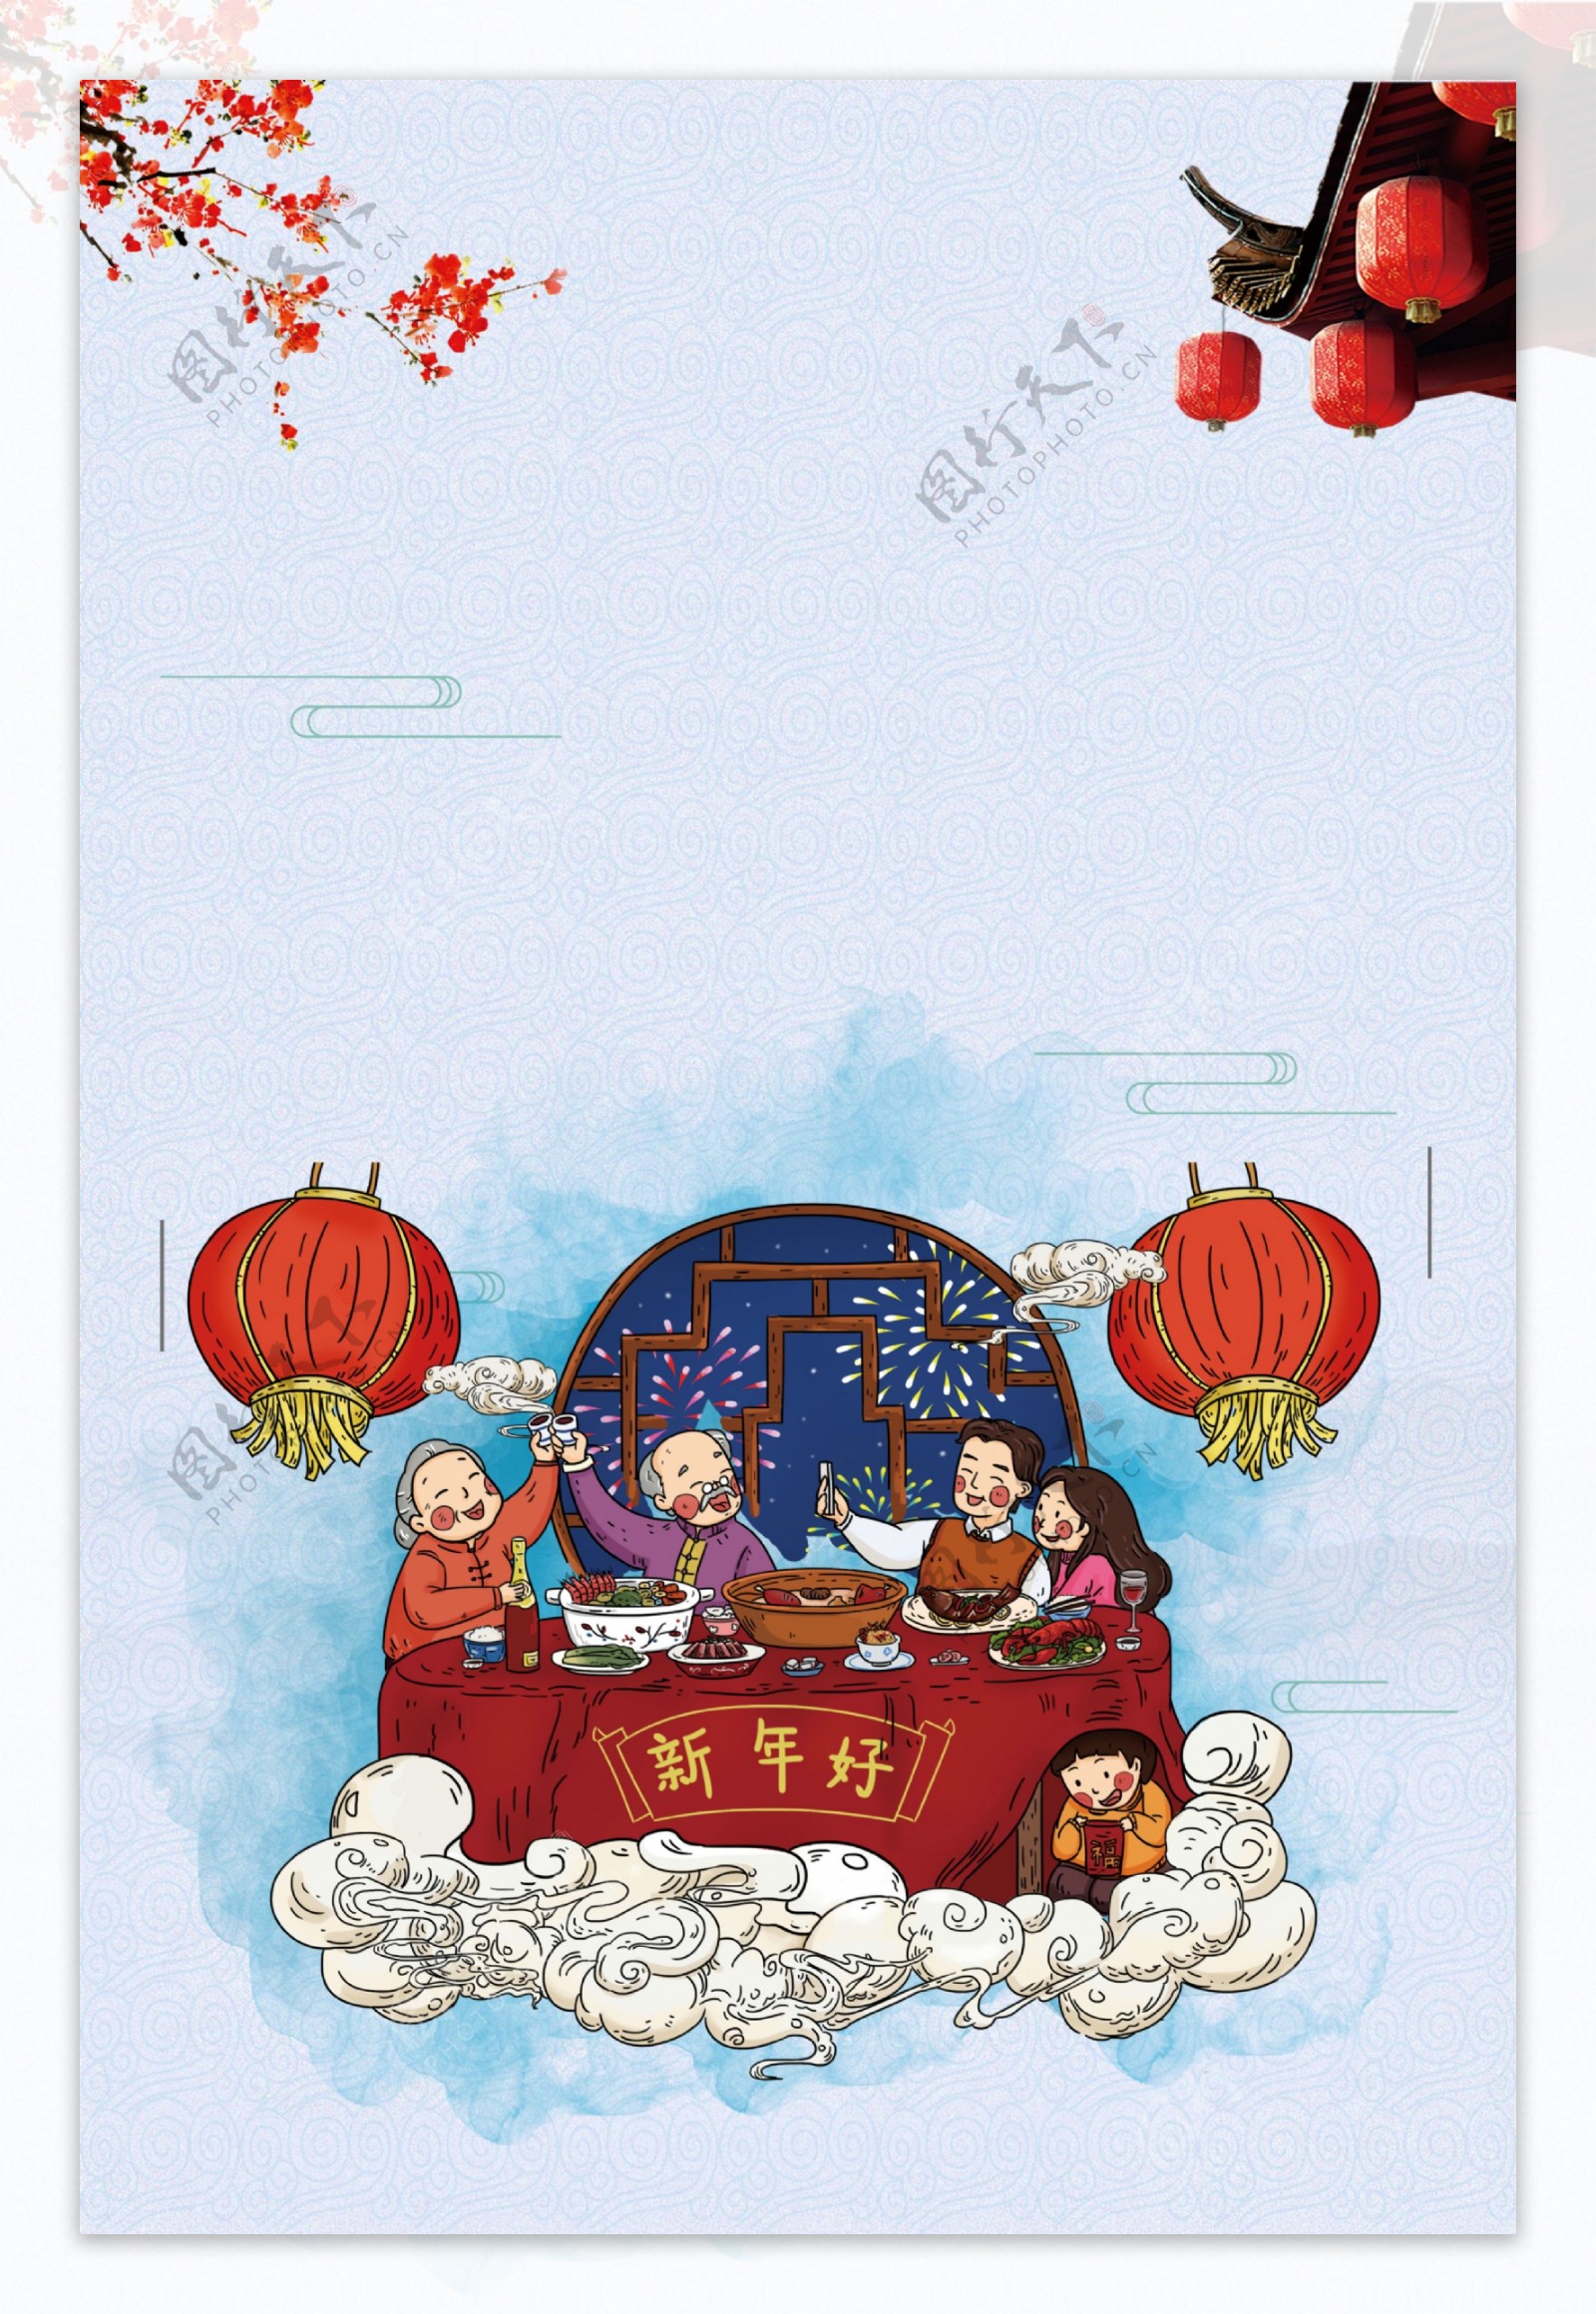 彩绘中国风年夜饭背景设计